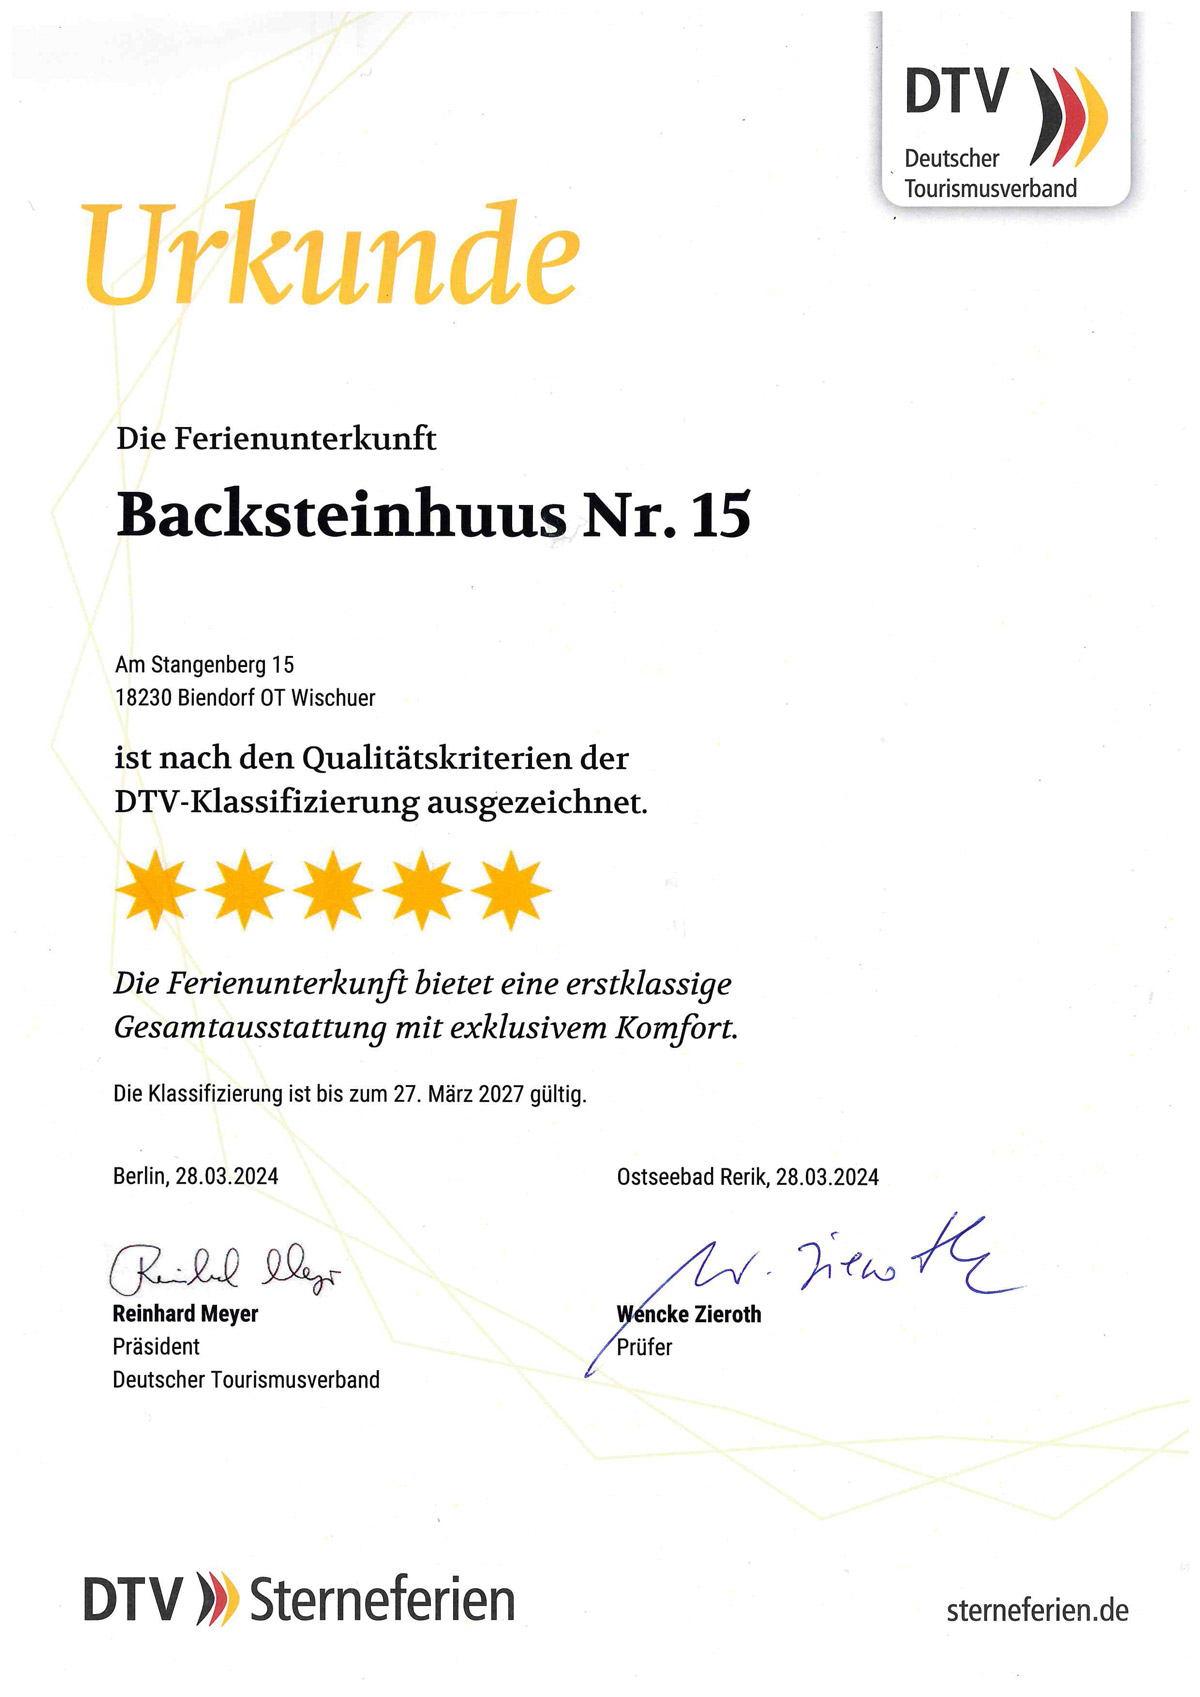 Urkunde-Zertifizierung-Backsteinhuus-vom-28_03_2024